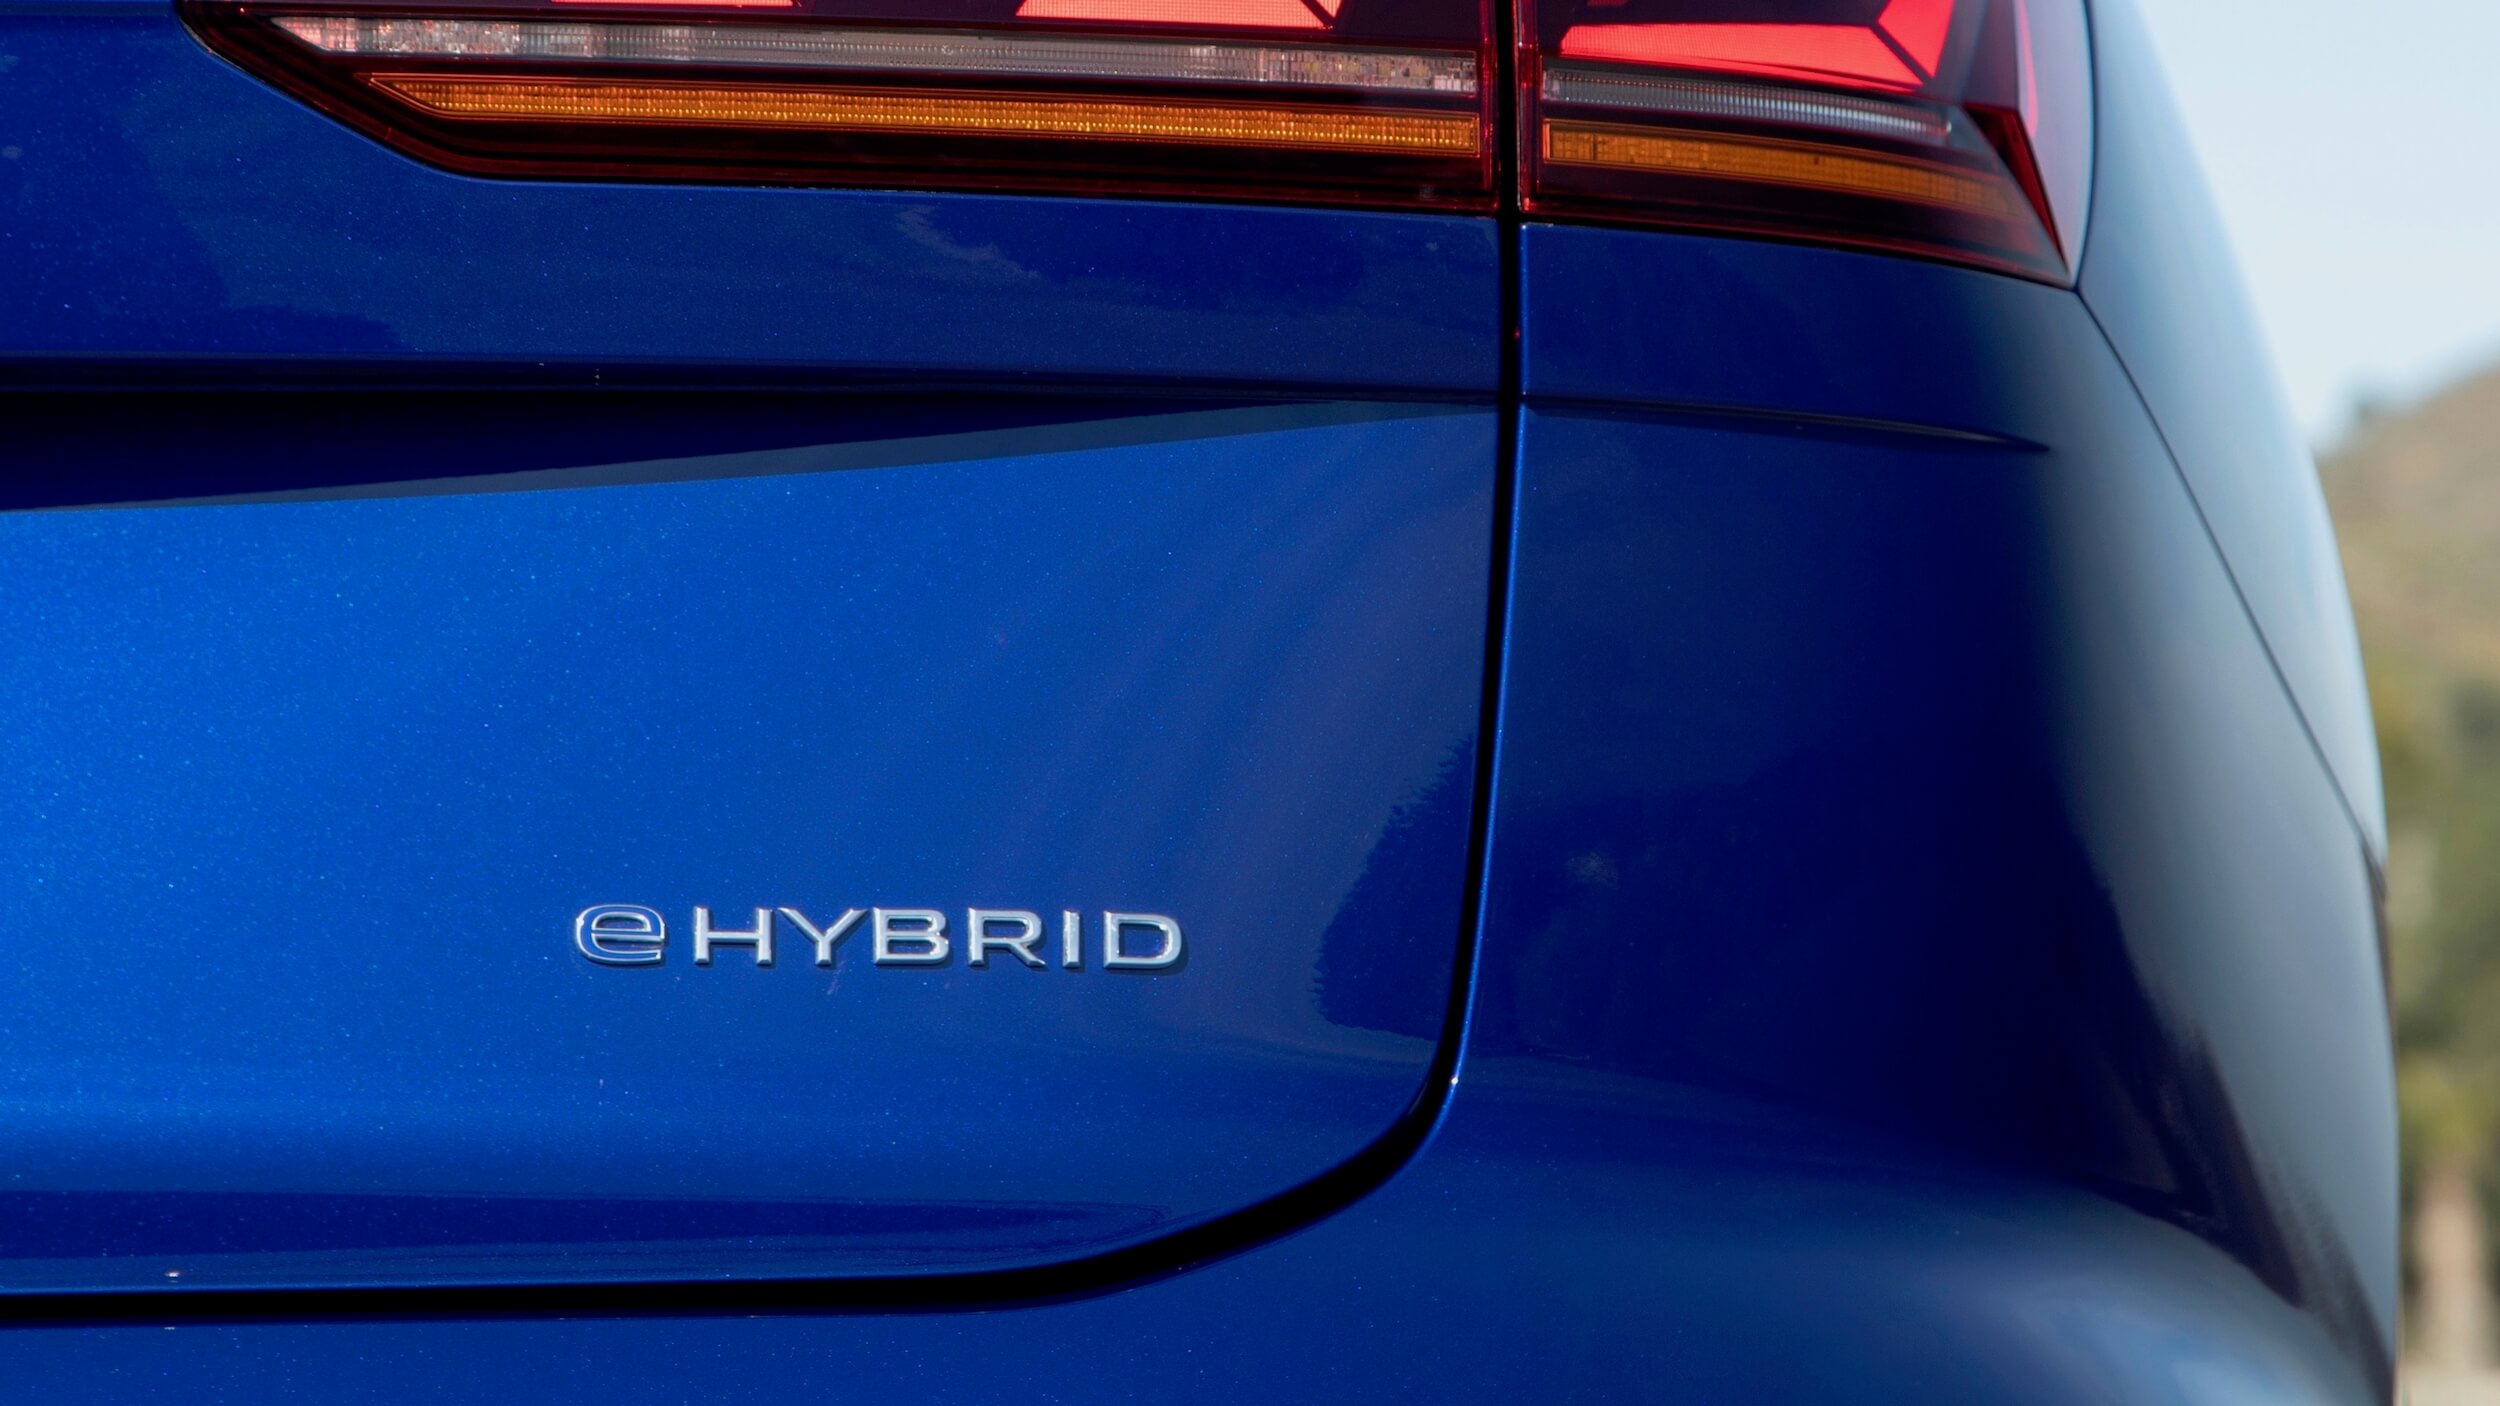 VW Touareg hybride logo